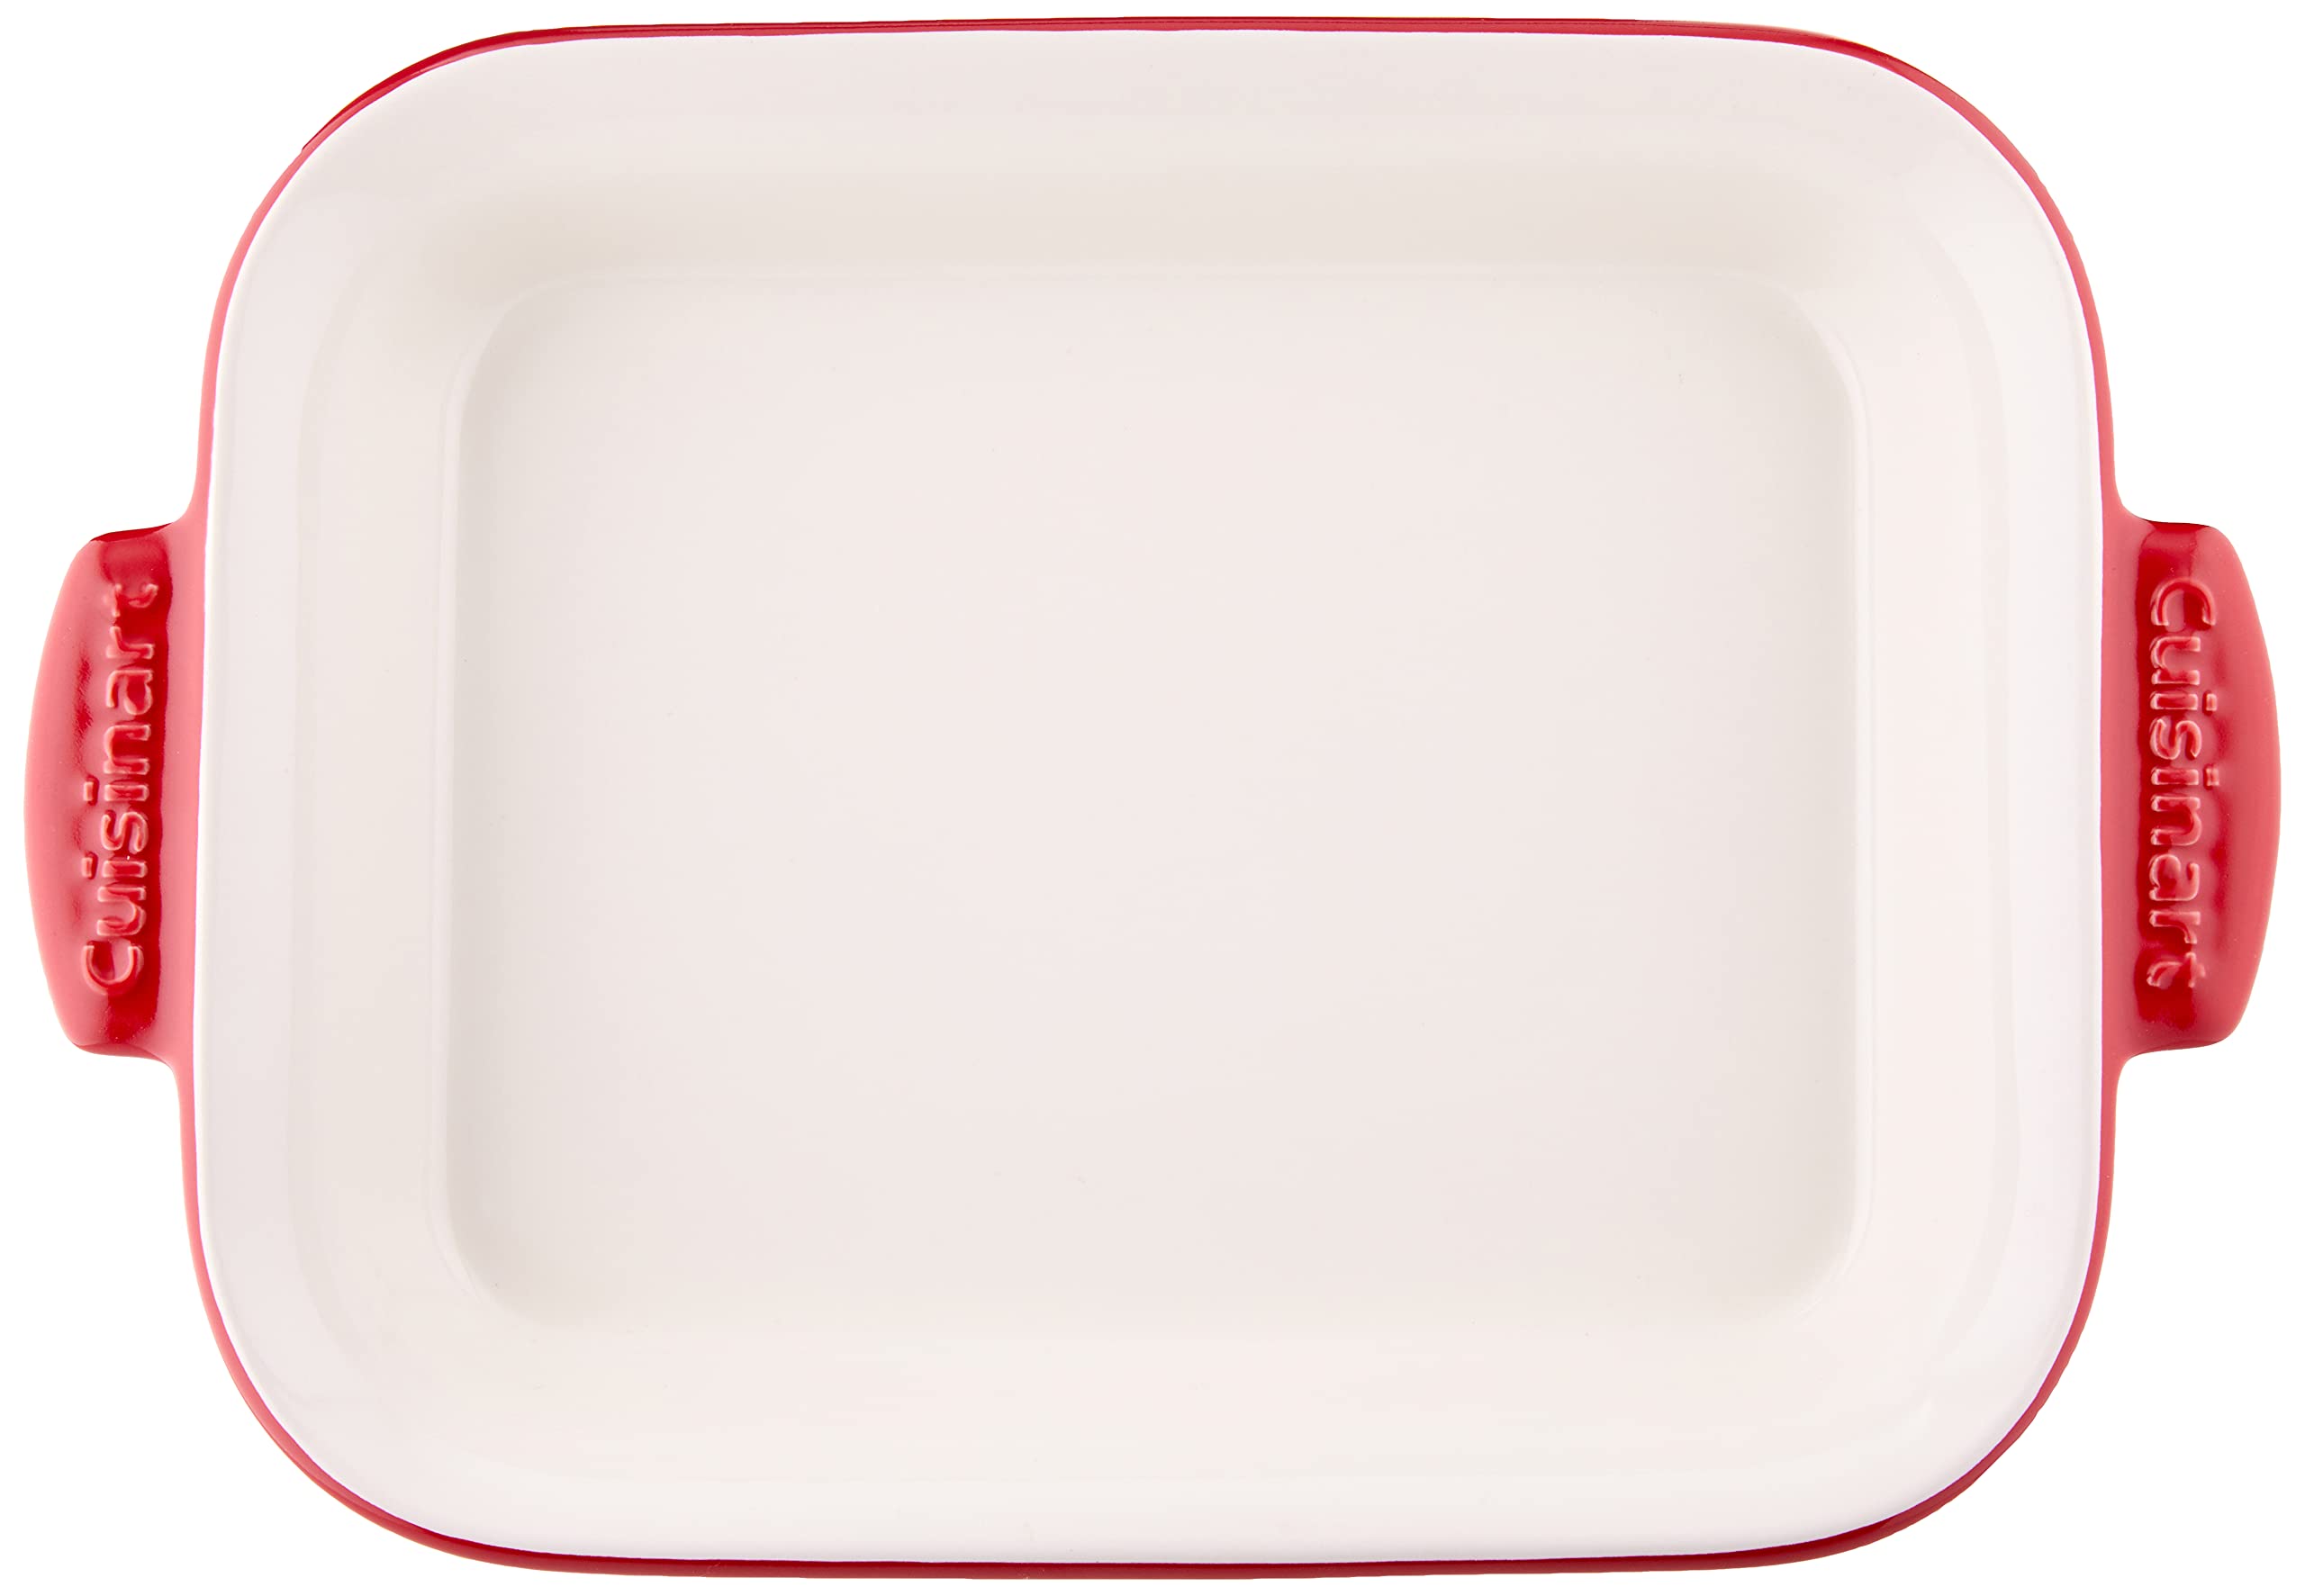 Cuisinart Chef's Classic Ceramic Bakeware-2 Quart Medium Rectangular Baker, Red